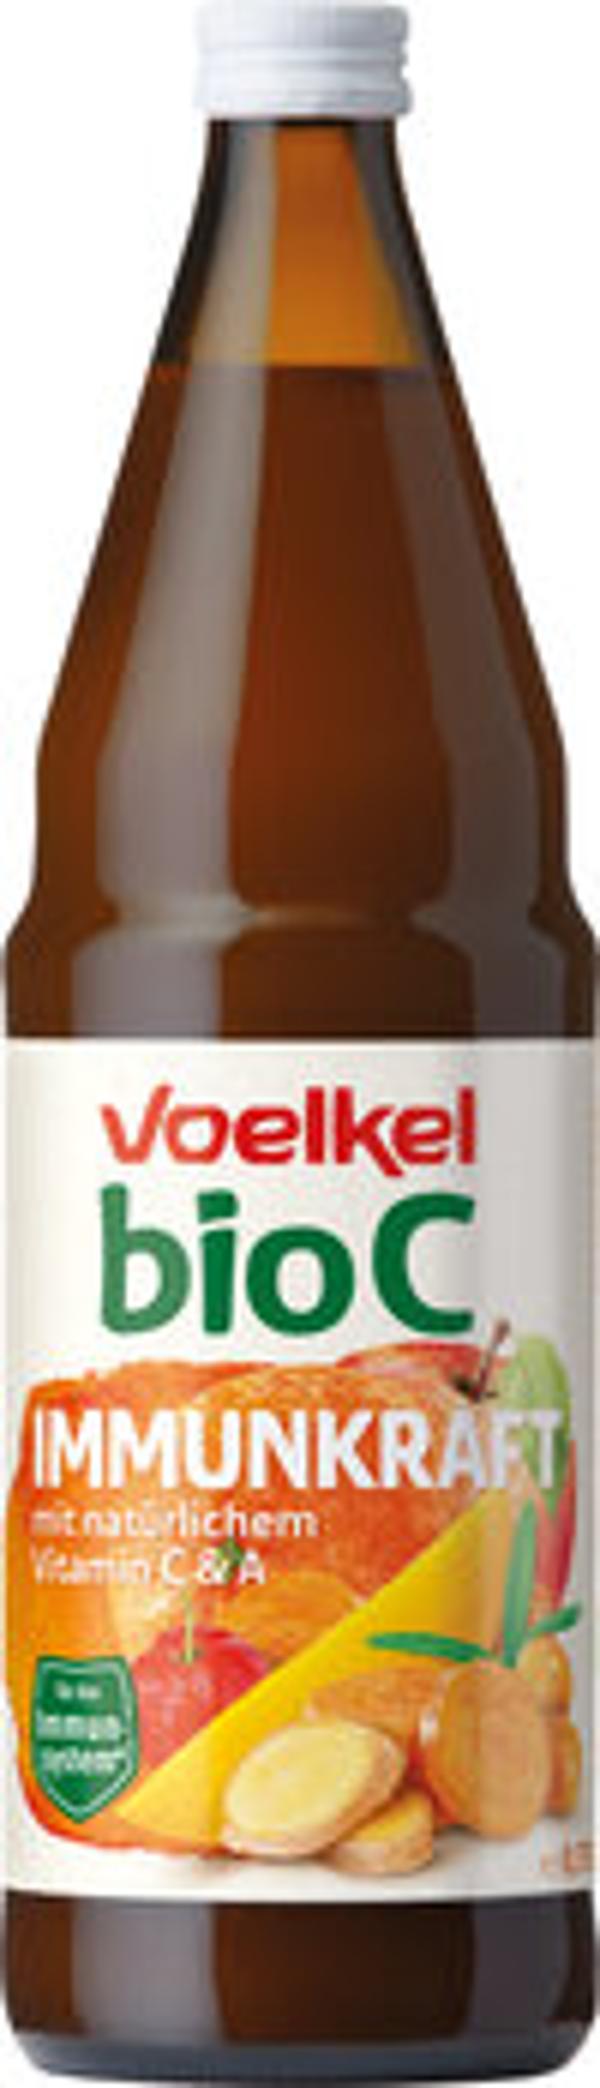 Produktfoto zu bioC Immunkraft 0,75L